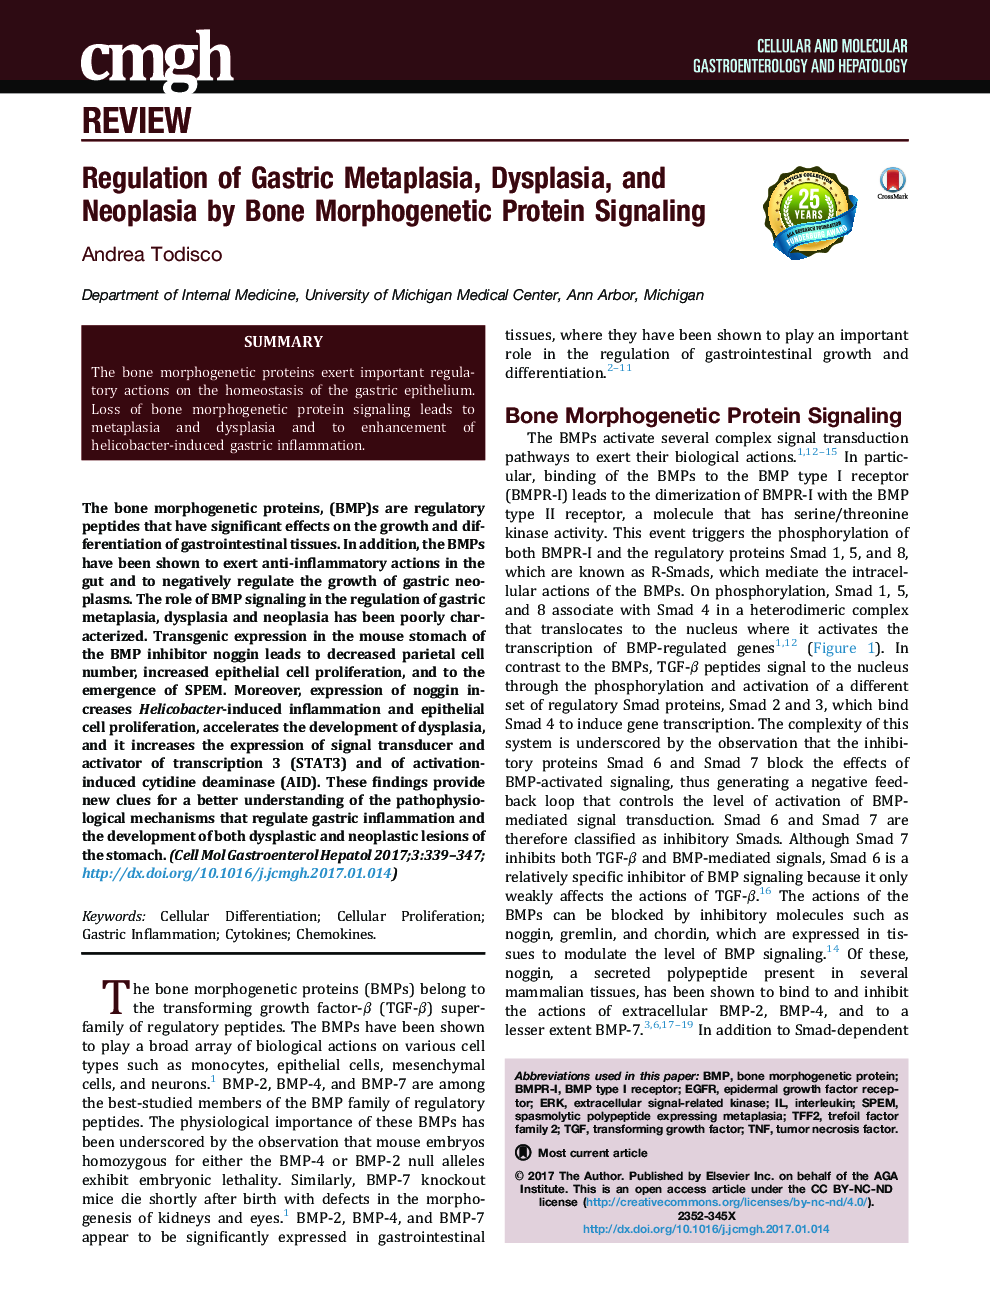 مقررات مربوط به متاپلازی معده، دیسپلازی و نئوپلازی با استفاده از سیگنالینگ پروتئین مورفوژنیک استخوان 